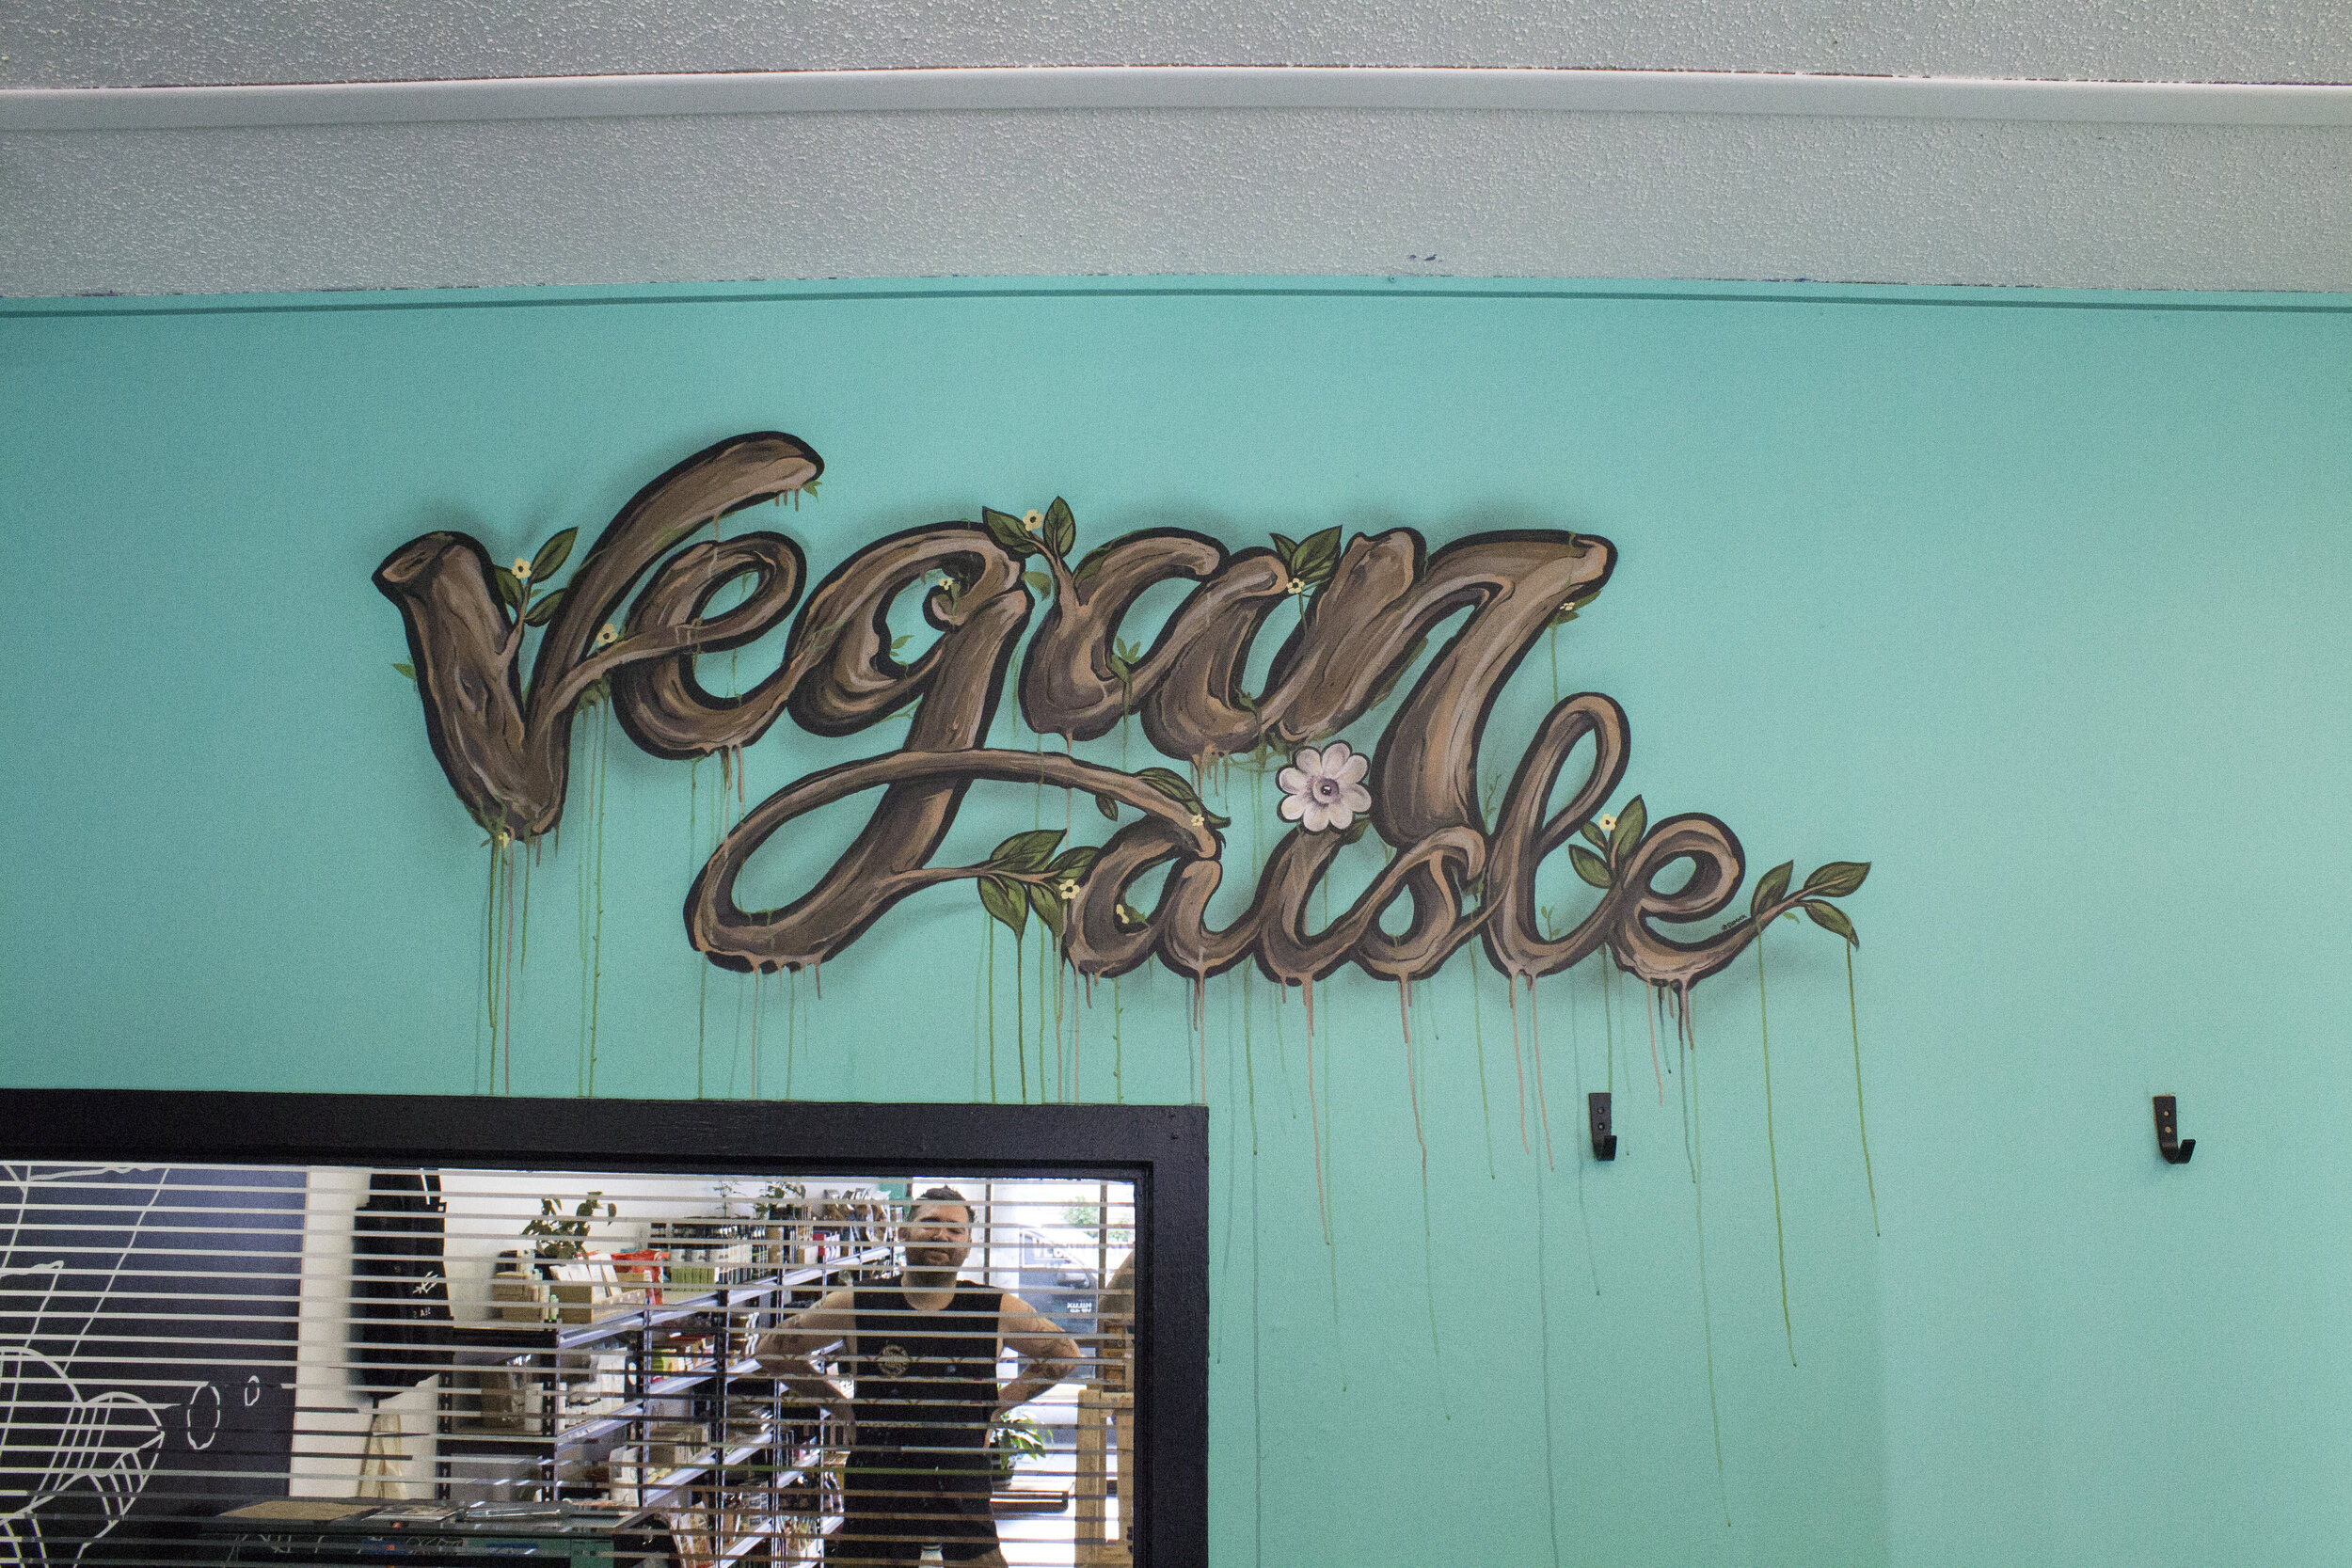 vegan-Aisle-signage.JPG